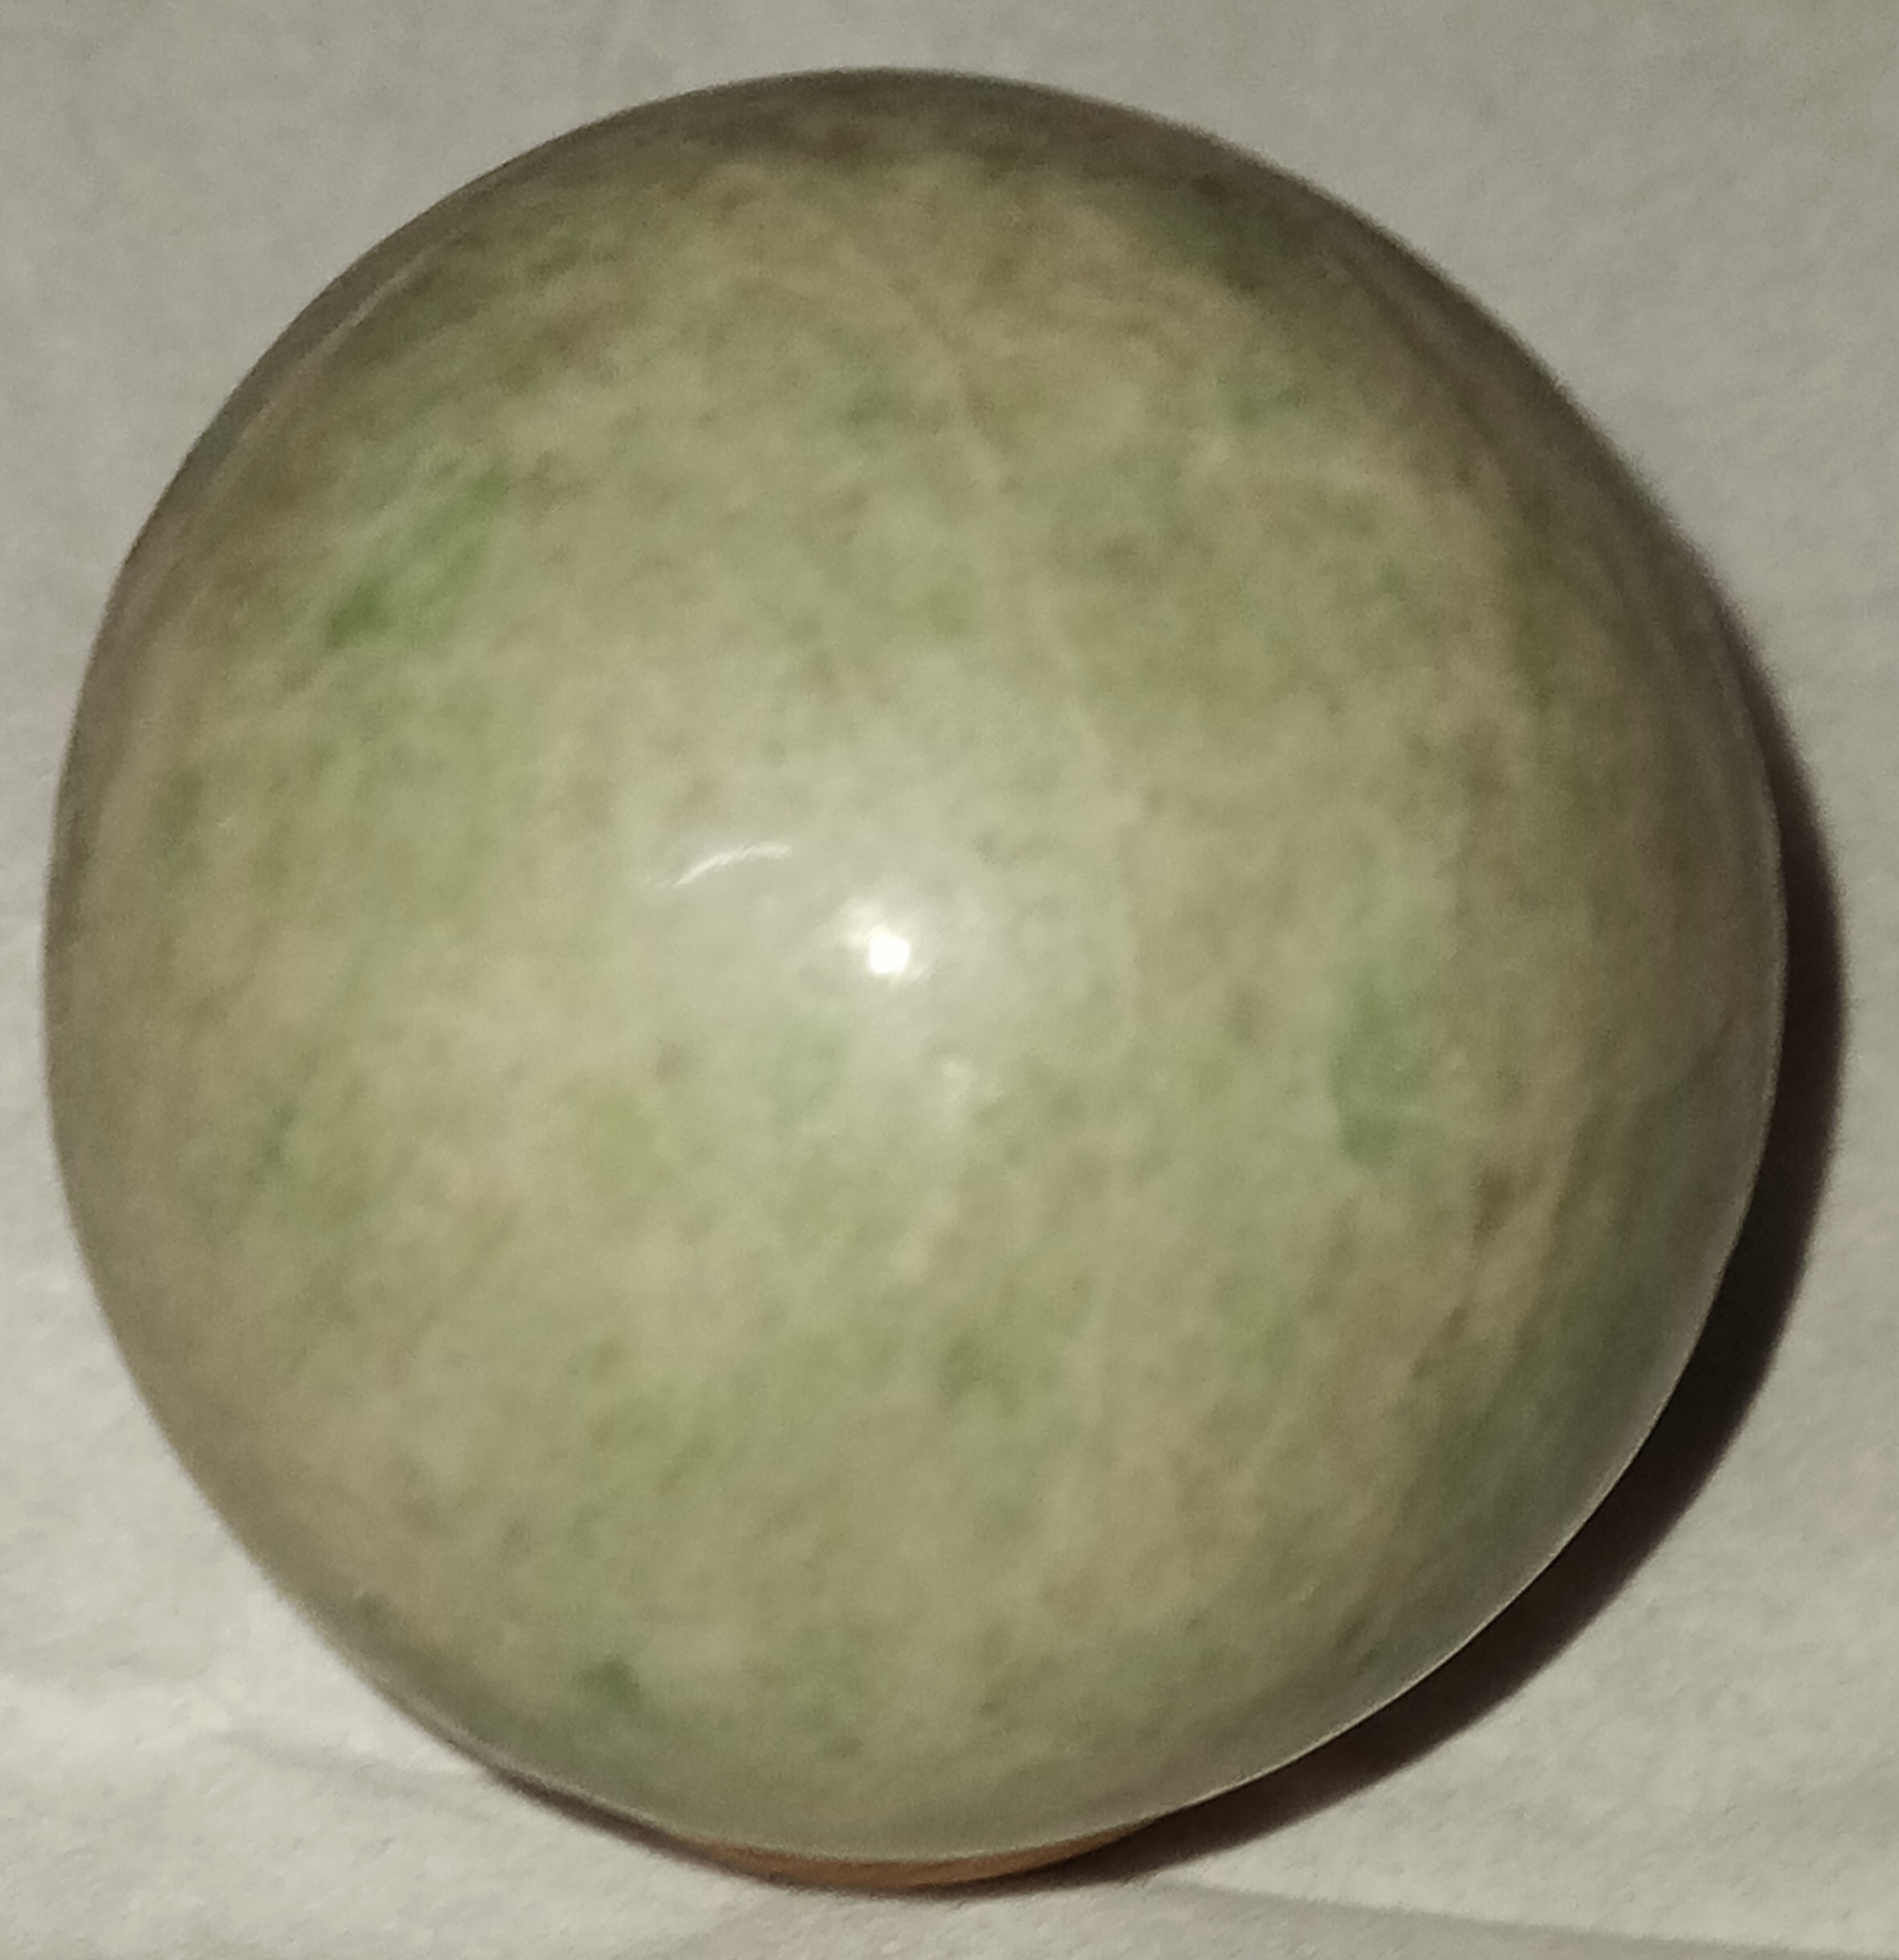 Jade (Serpentine) sphere